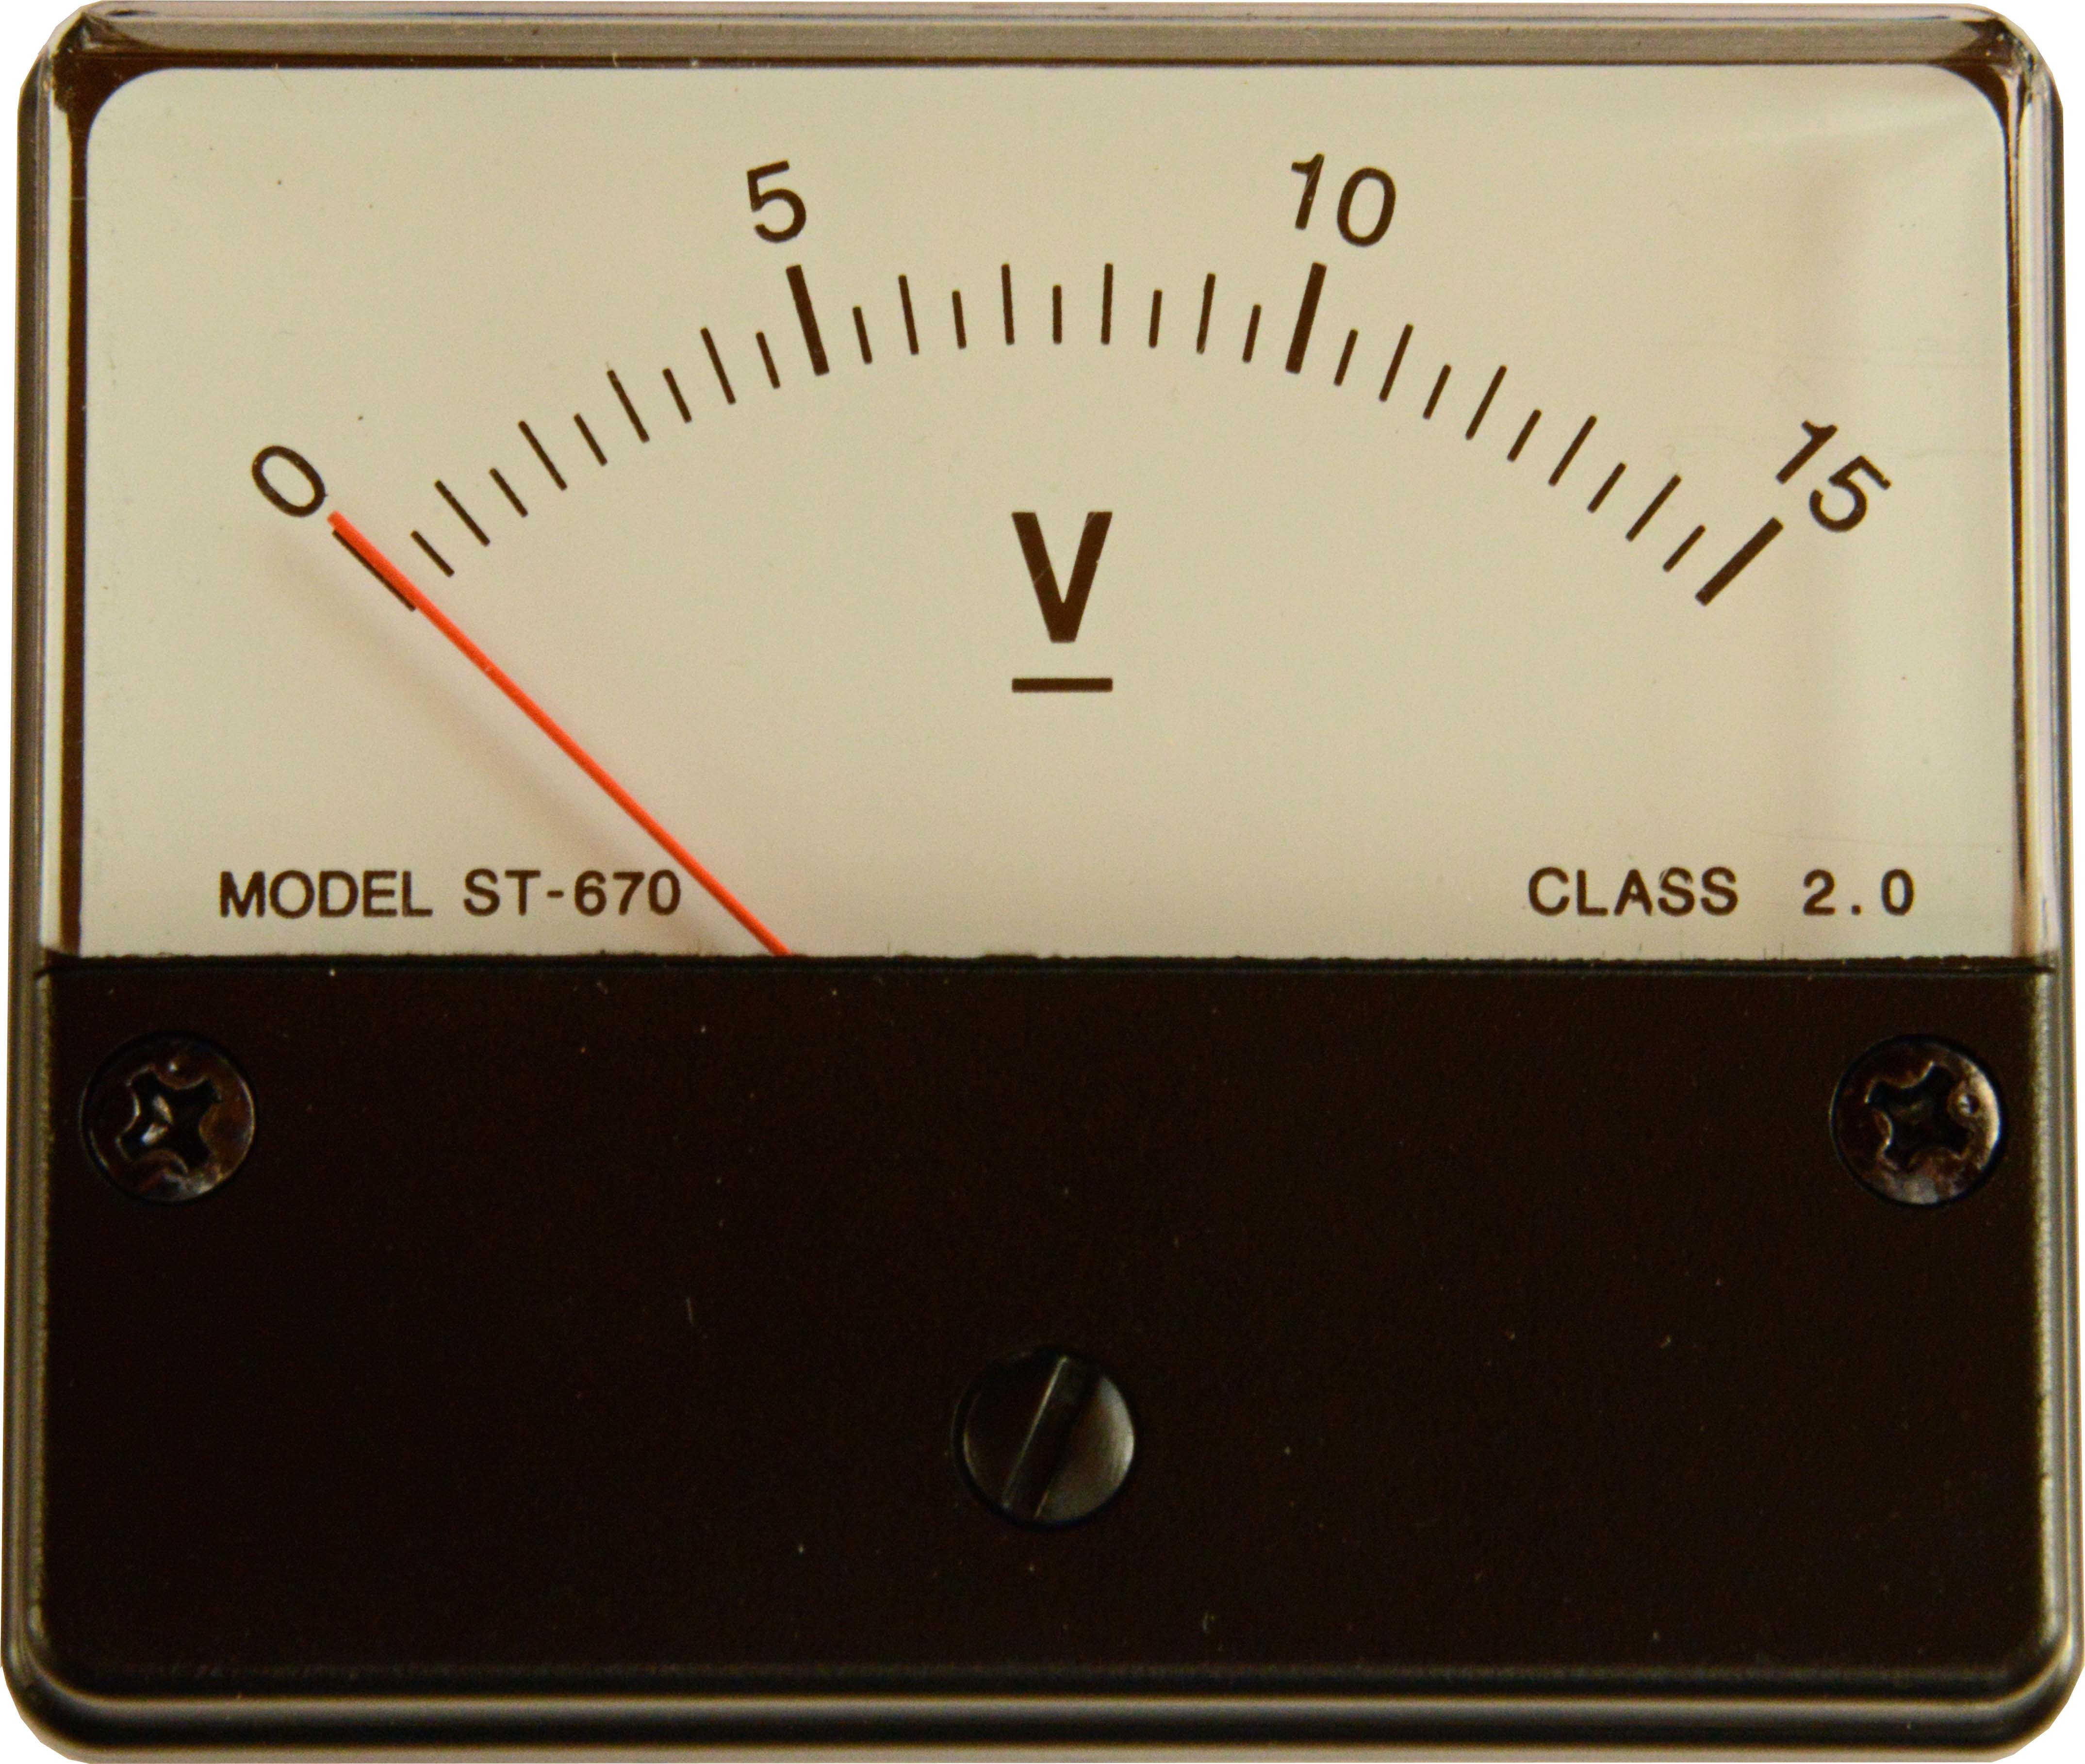 Voltmetroa:  zirkuitu elektriko baten pi punturen harteko potentzial diferentzia edo tentsioa neurtzen duen gailua.